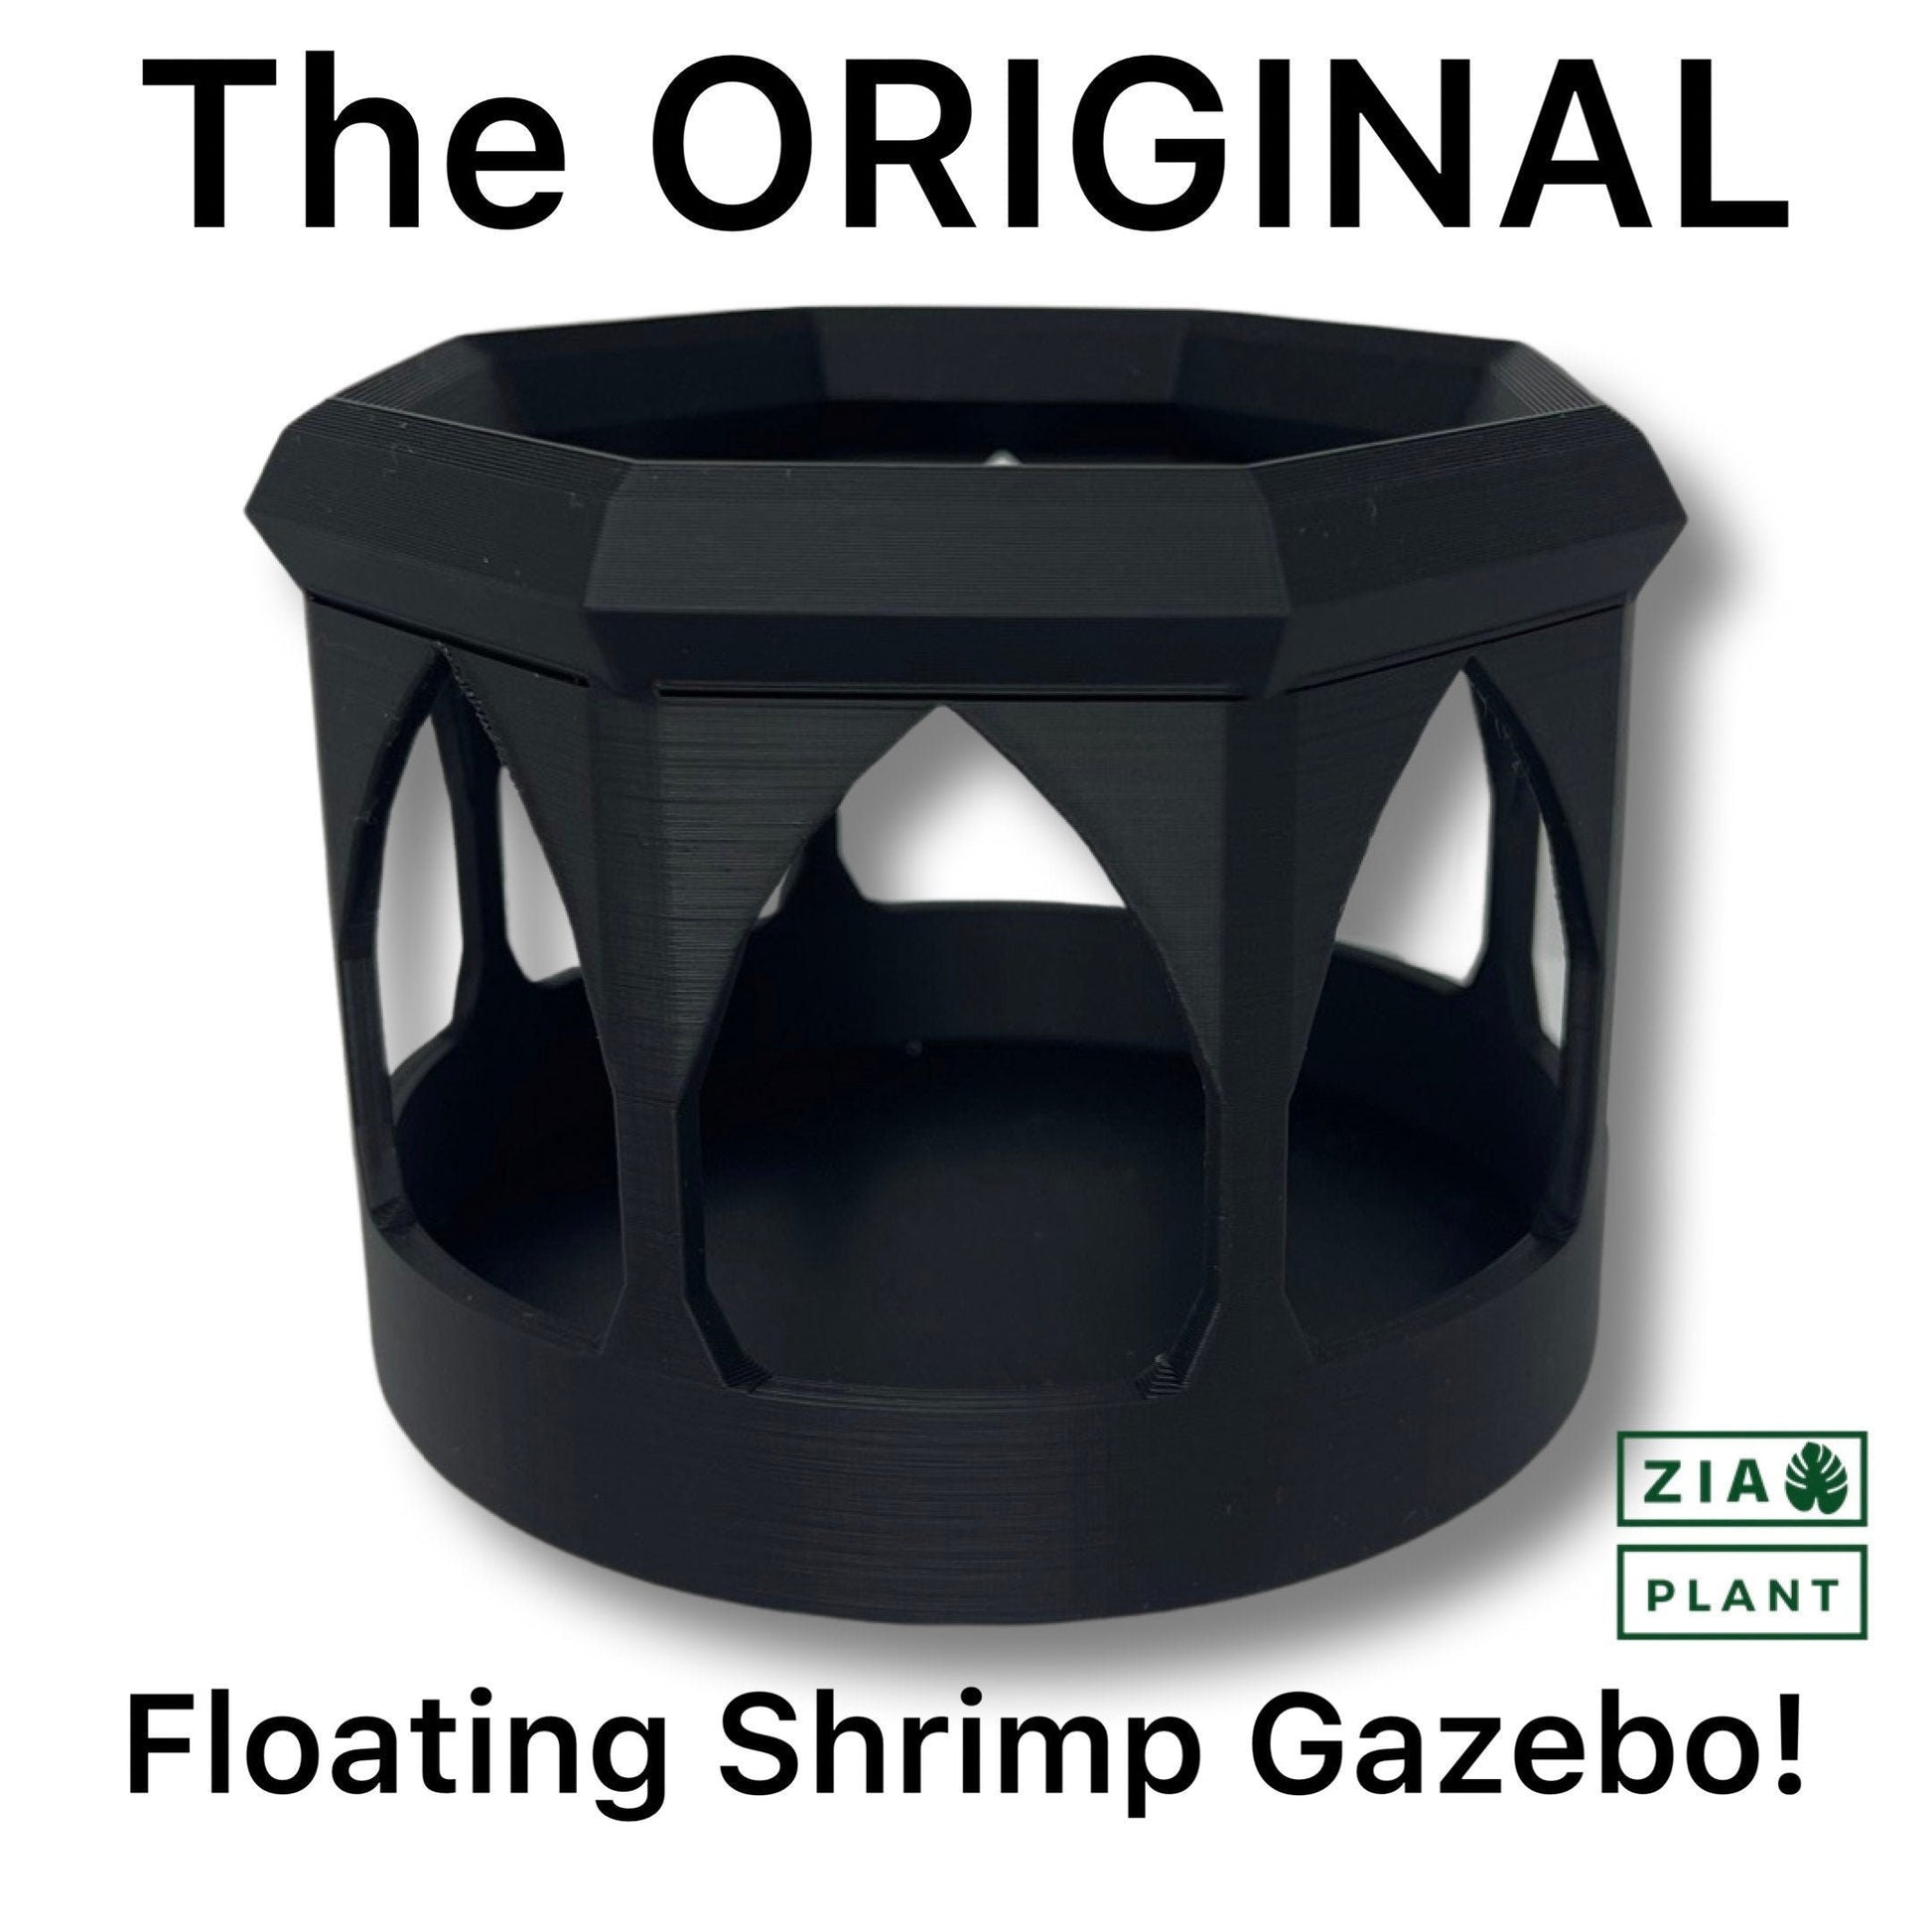 Floating Shrimp Gazebo | Easy Cleanup! | Shrimp Feeder & Hangout